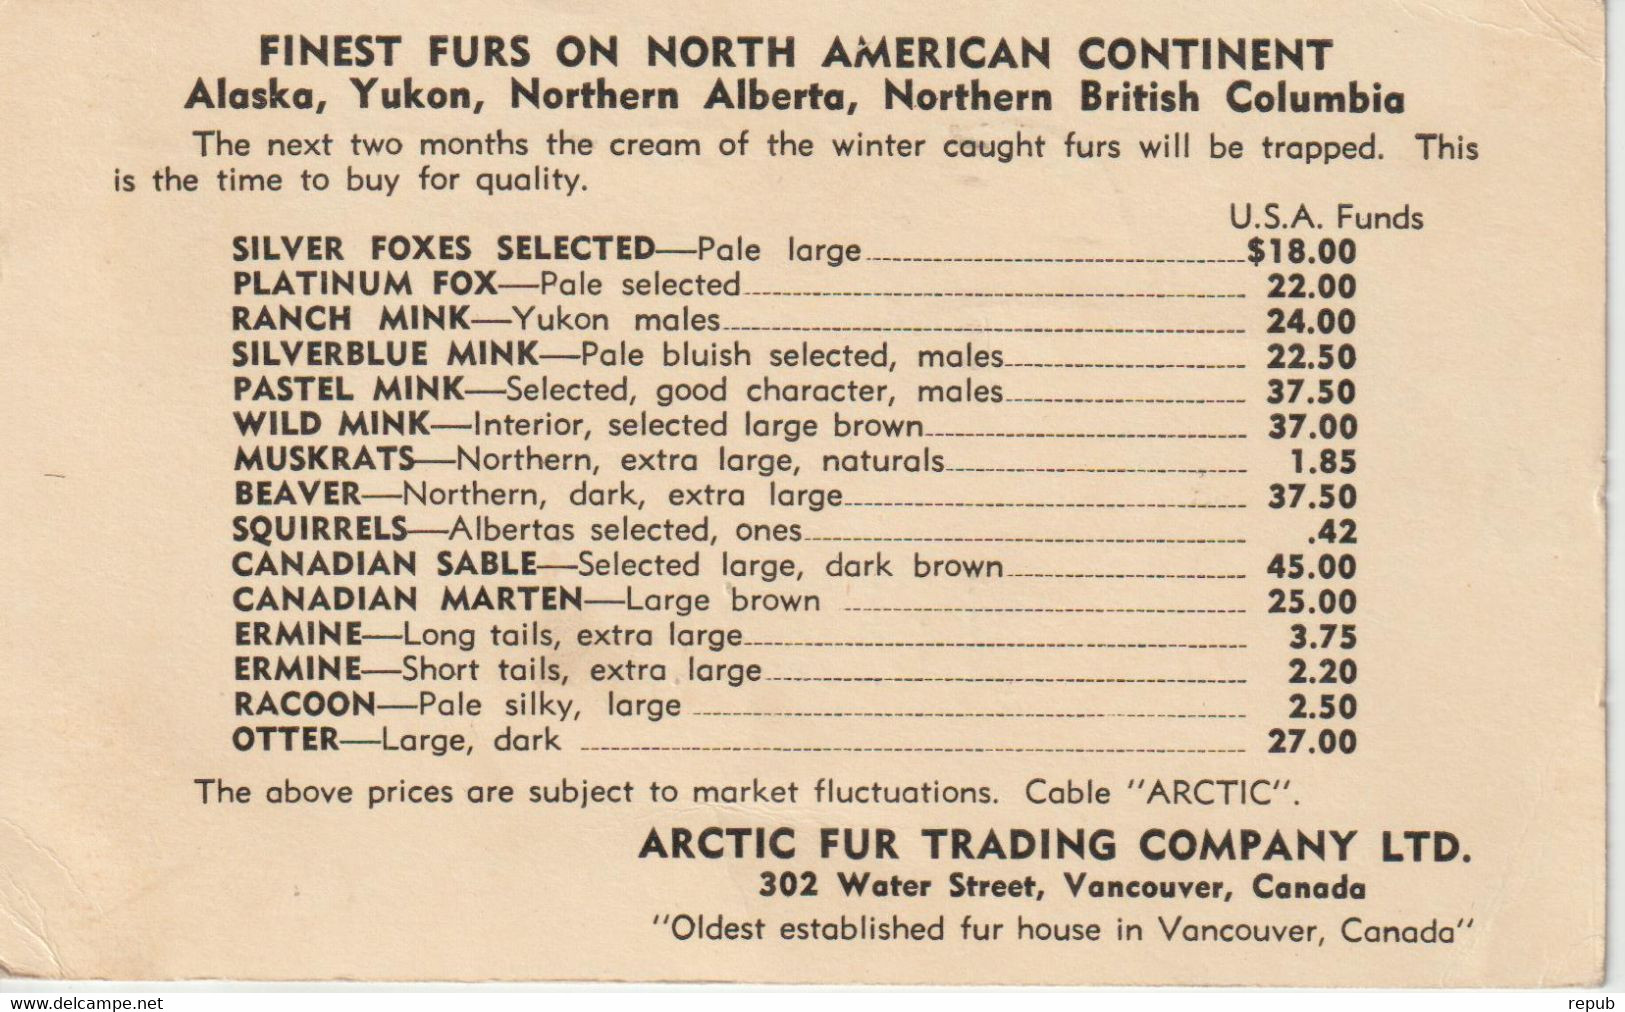 Canada Entier Avec Repiquage Pour La France Oblit Vancouver Sans Dateur - 1903-1954 Kings